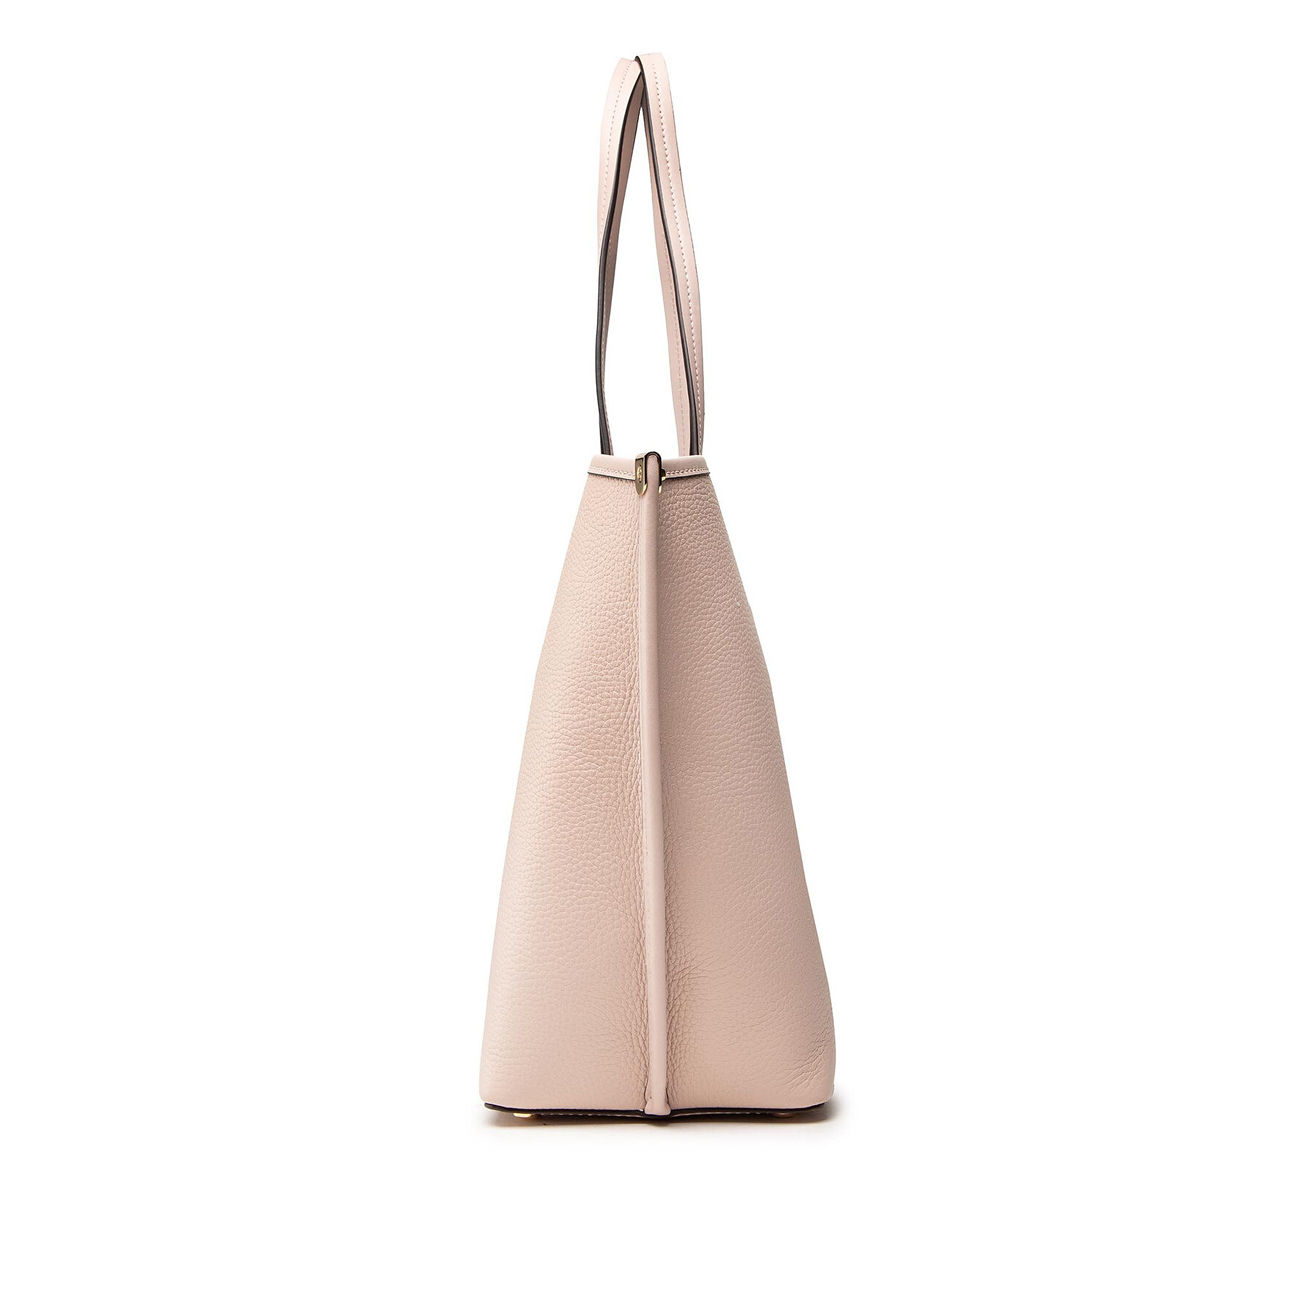 Michael Kors Soft Pink Tote Bag With Shoulder Strap